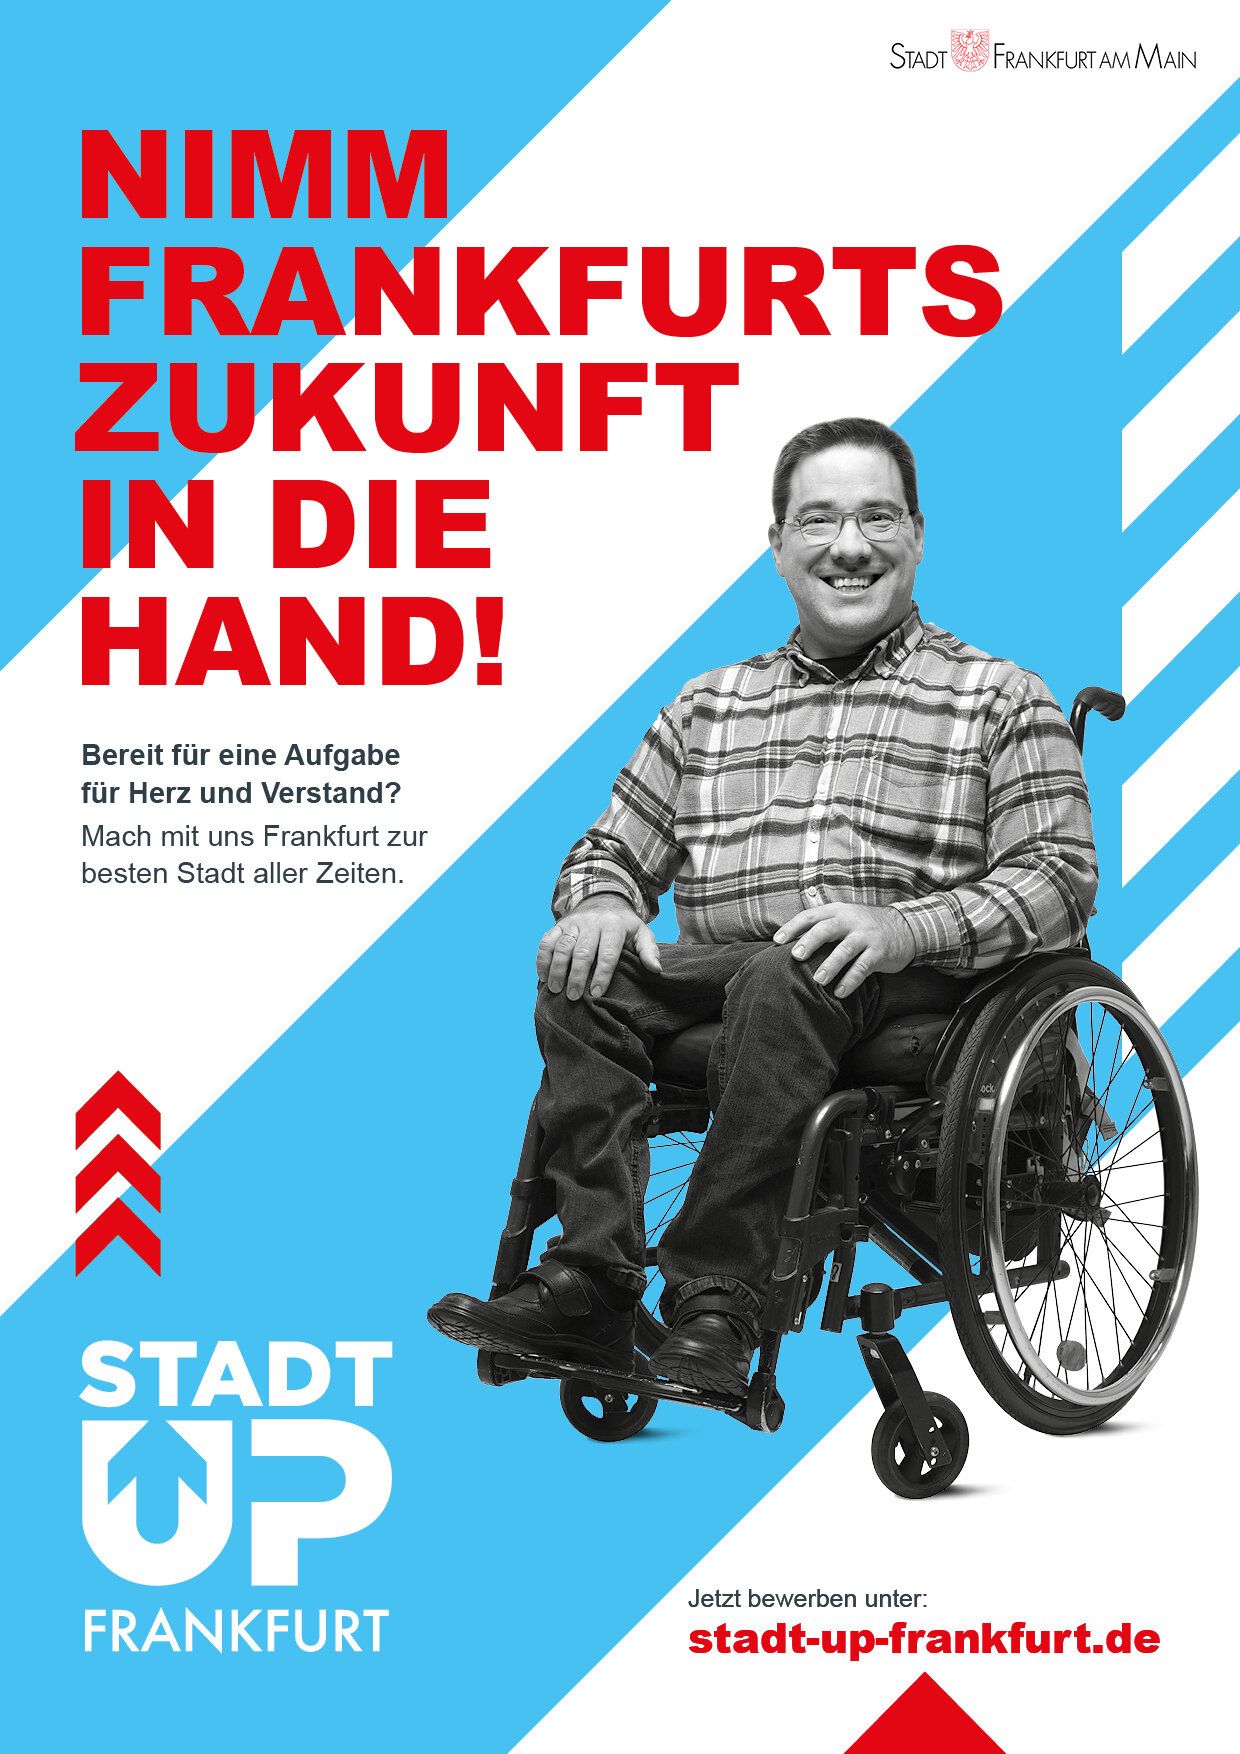 Plakat mit dem Text "Nimm Frankfurts Zukunft in die Hand!" und einem Mitarbeitern der Stadt Frankfurt.